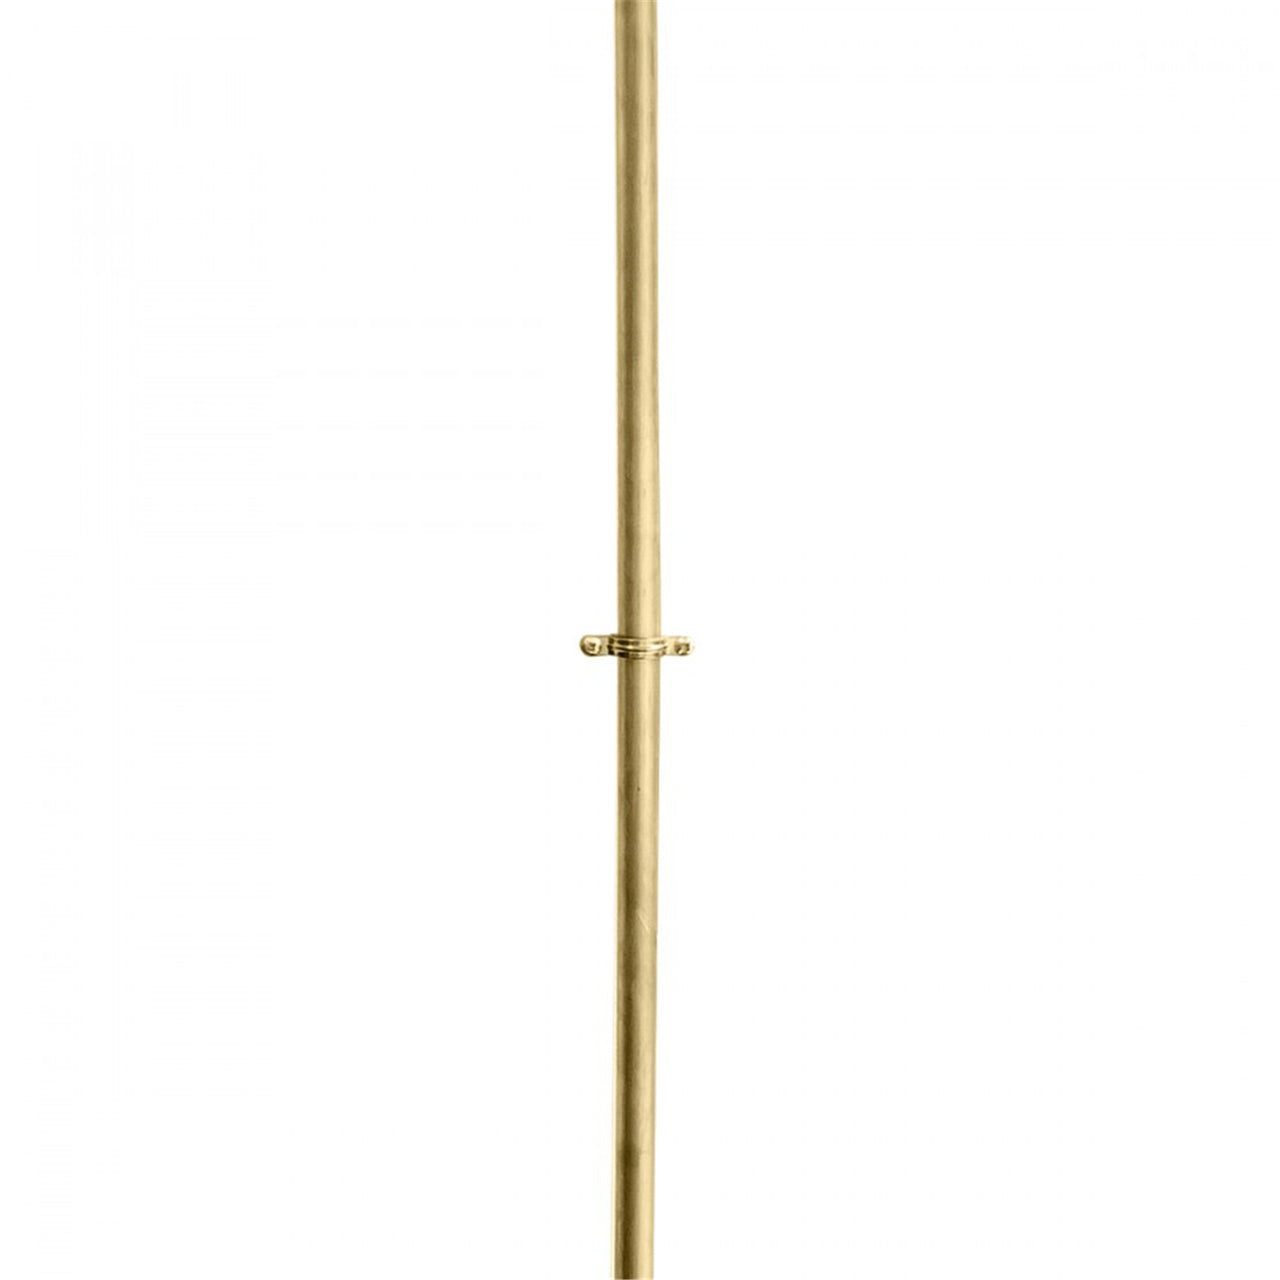 Hanging Lamp n°1: Brass